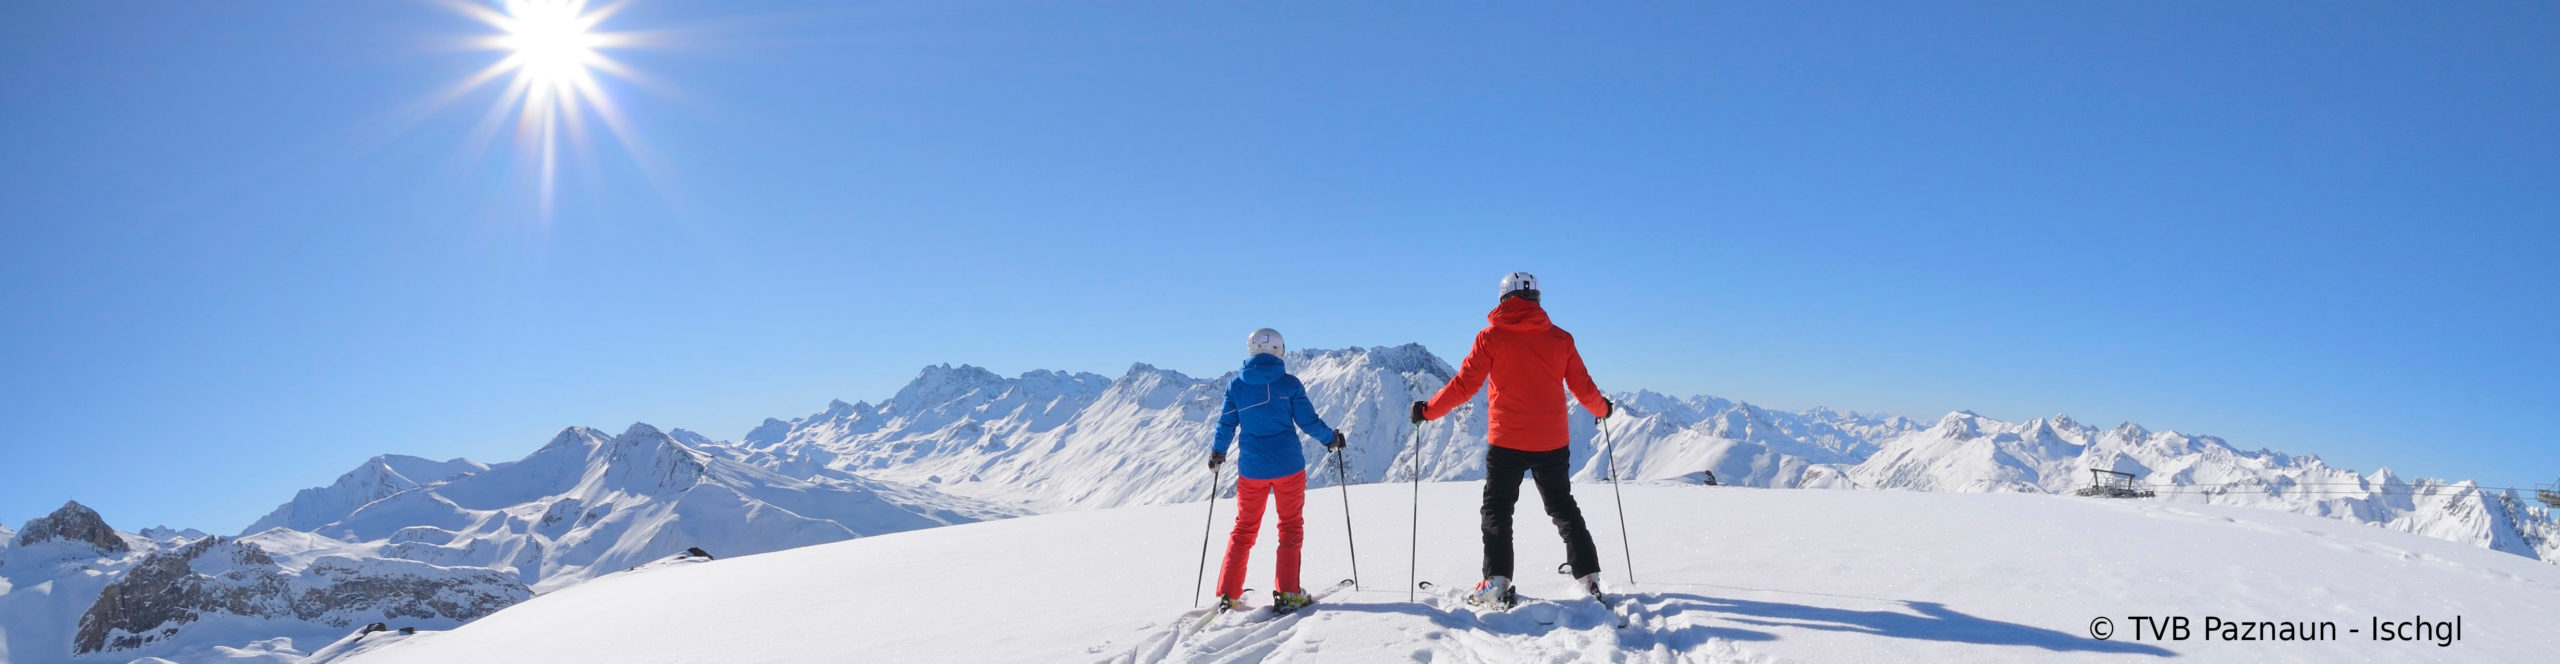 ISCHGL & SERFAUS – Skiwochenende in zwei der besten Skigebiete der Alpen 